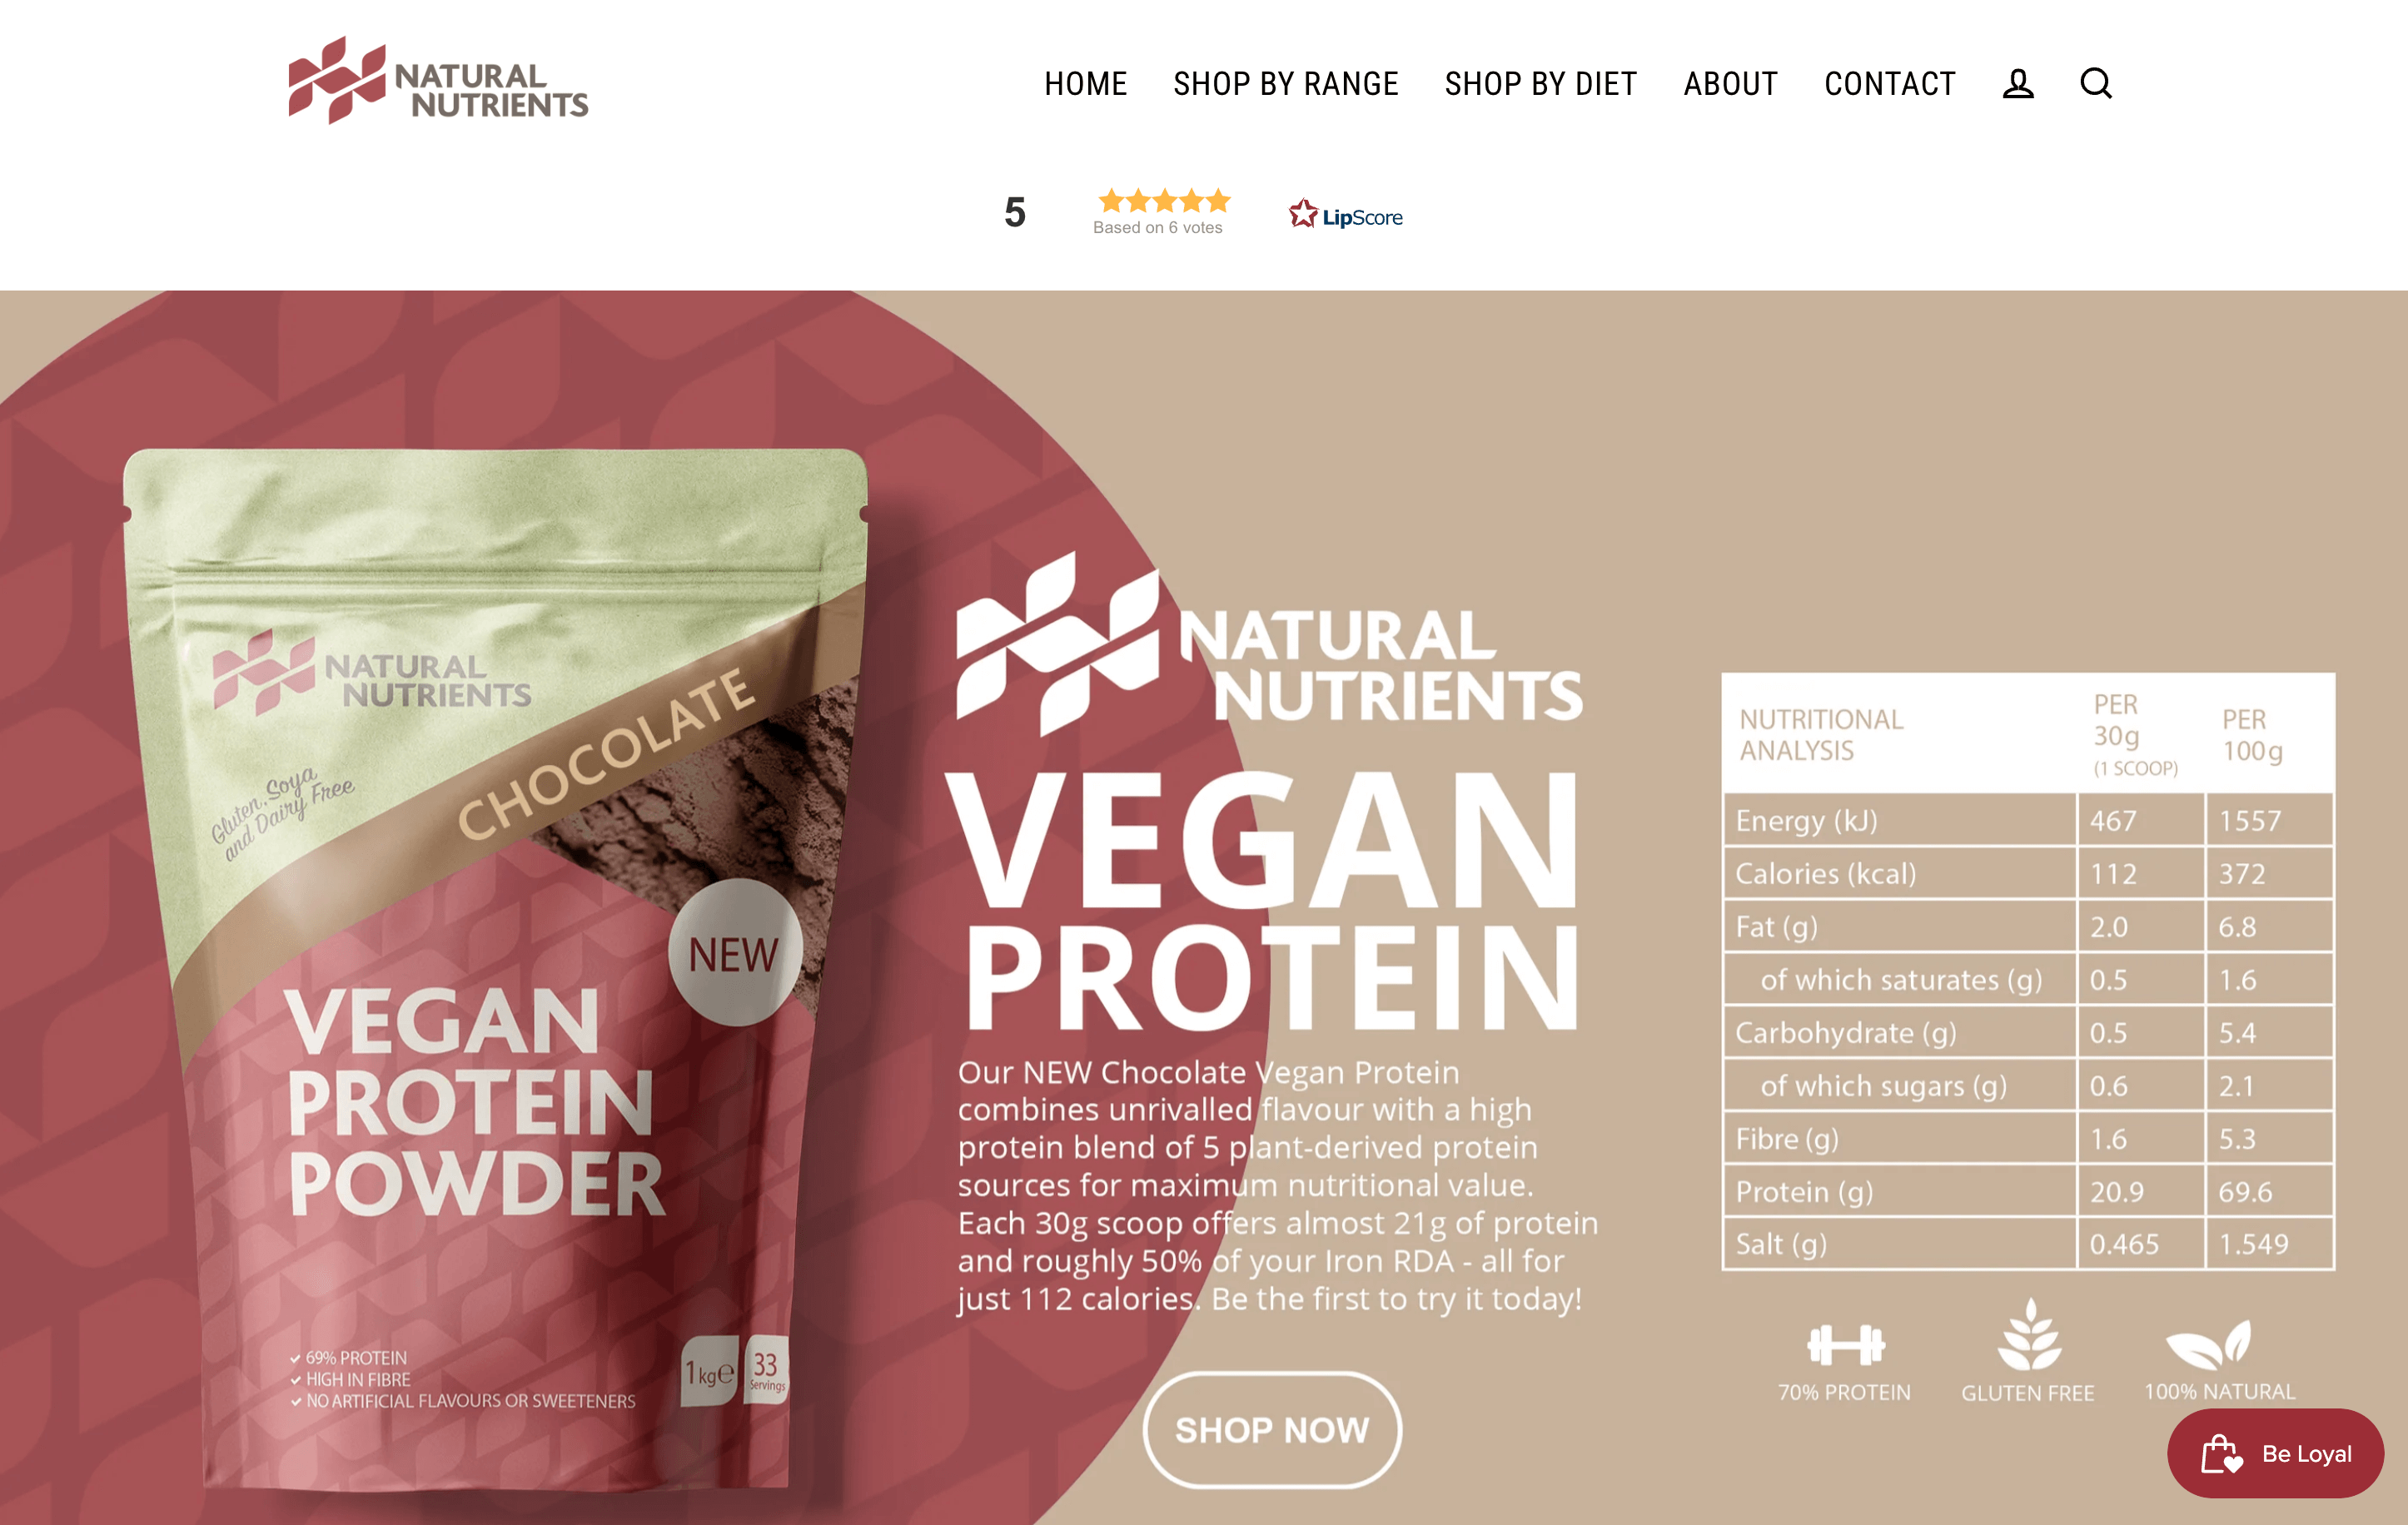 Natural Nutrients 主页的屏幕截图显示了其新型纯素蛋白粉的产品规格。